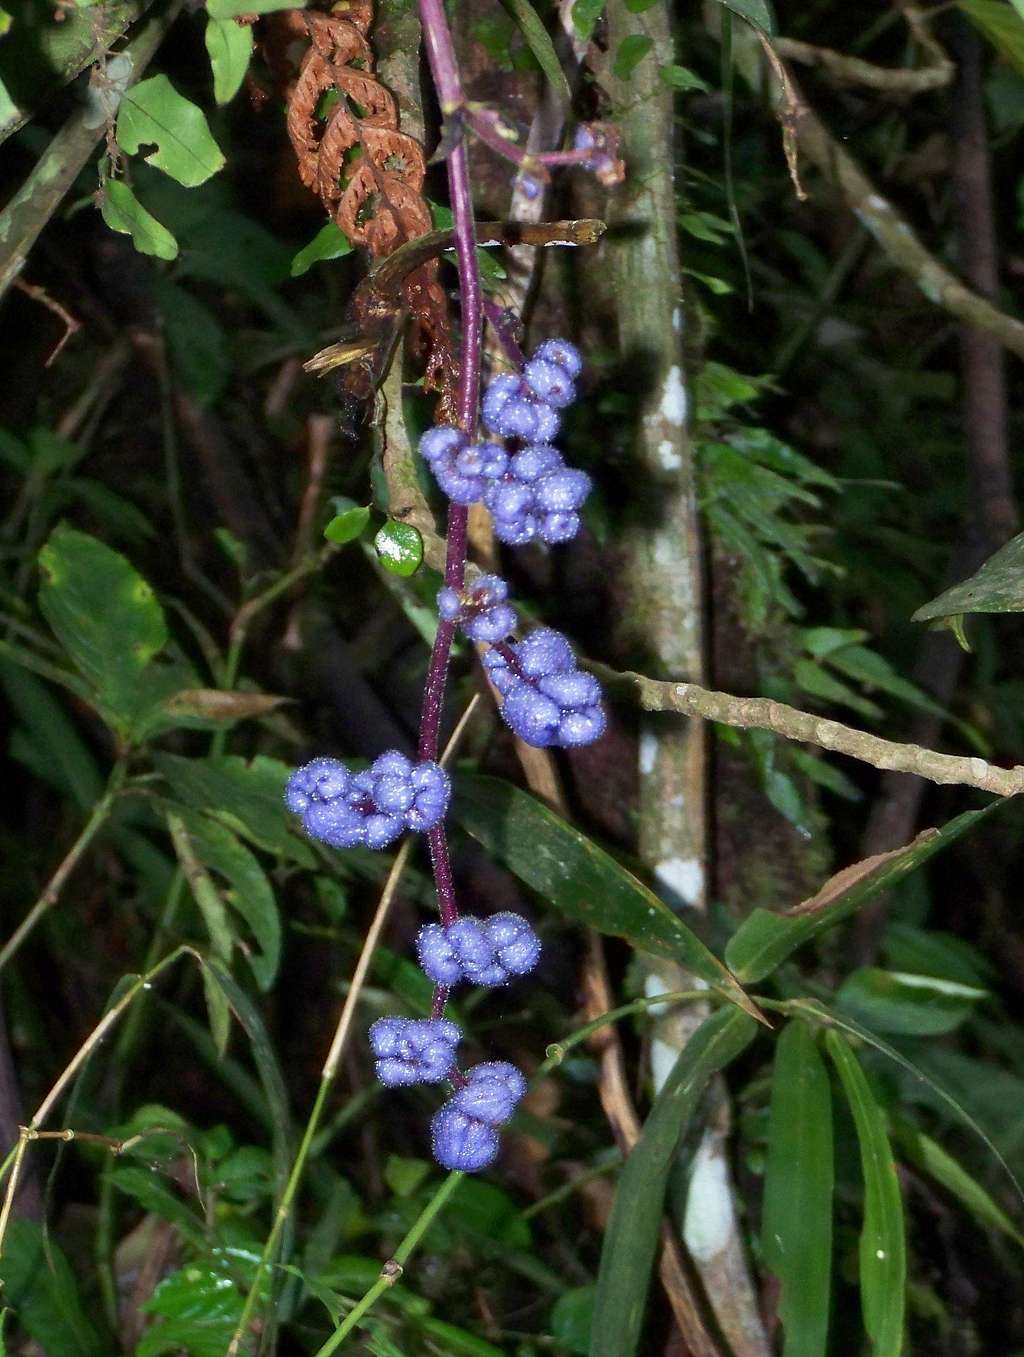 Flora on Mt. Malipunyo